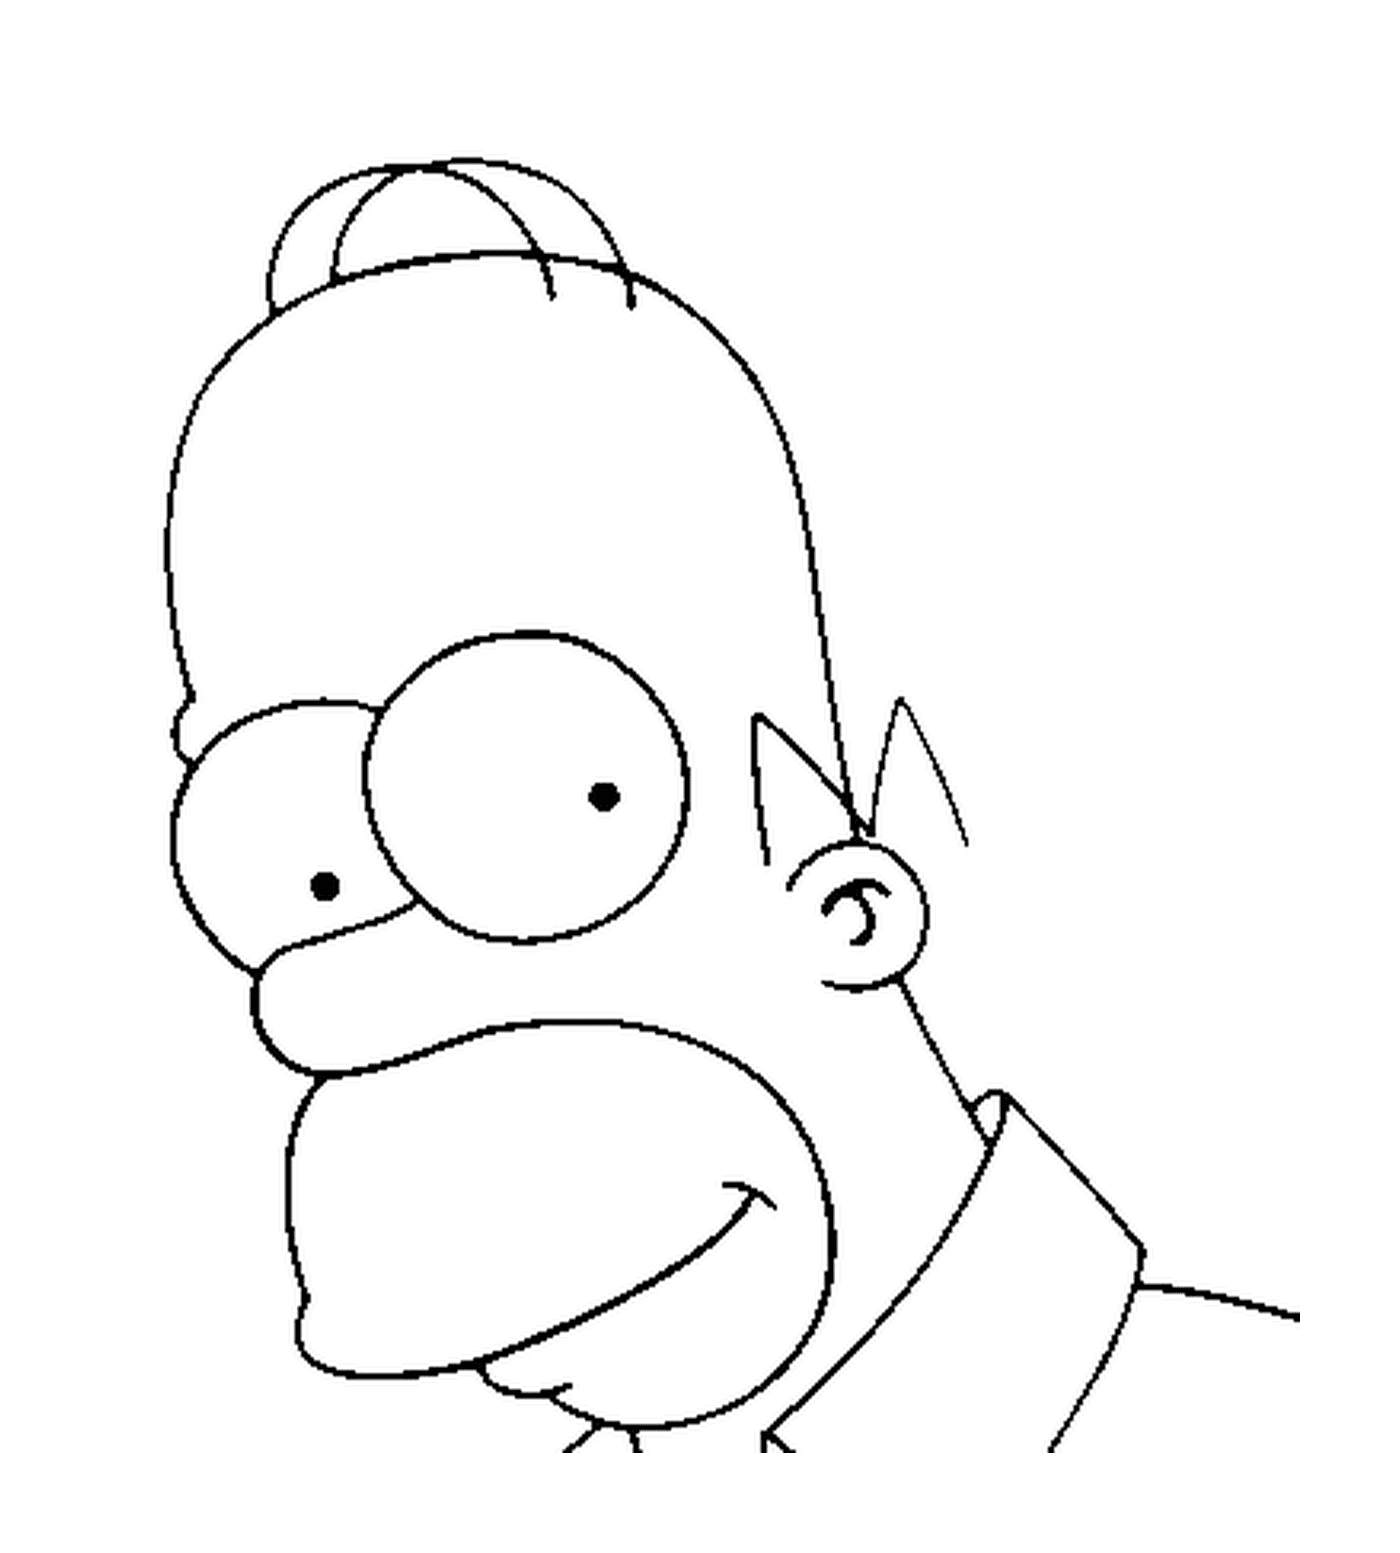   Visage de Homer Simpson 